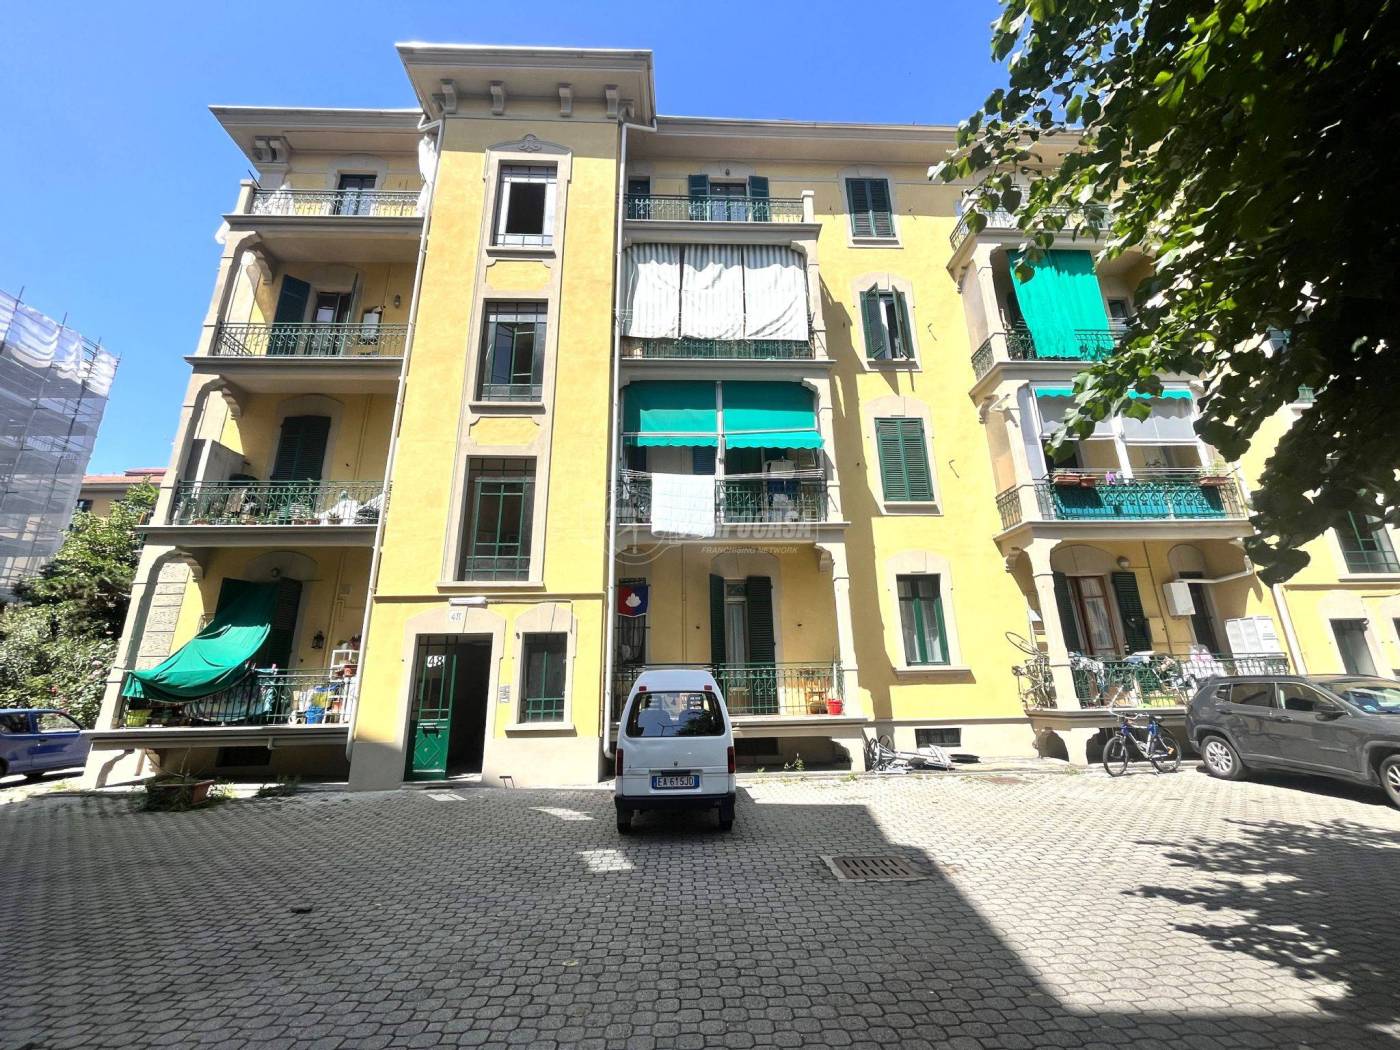 Vendita Appartamento Torino. Bilocale in corso Racconigi 60. Da  ristrutturare, secondo piano, con balcone, riscaldamento centralizzato,  rif. 102011668